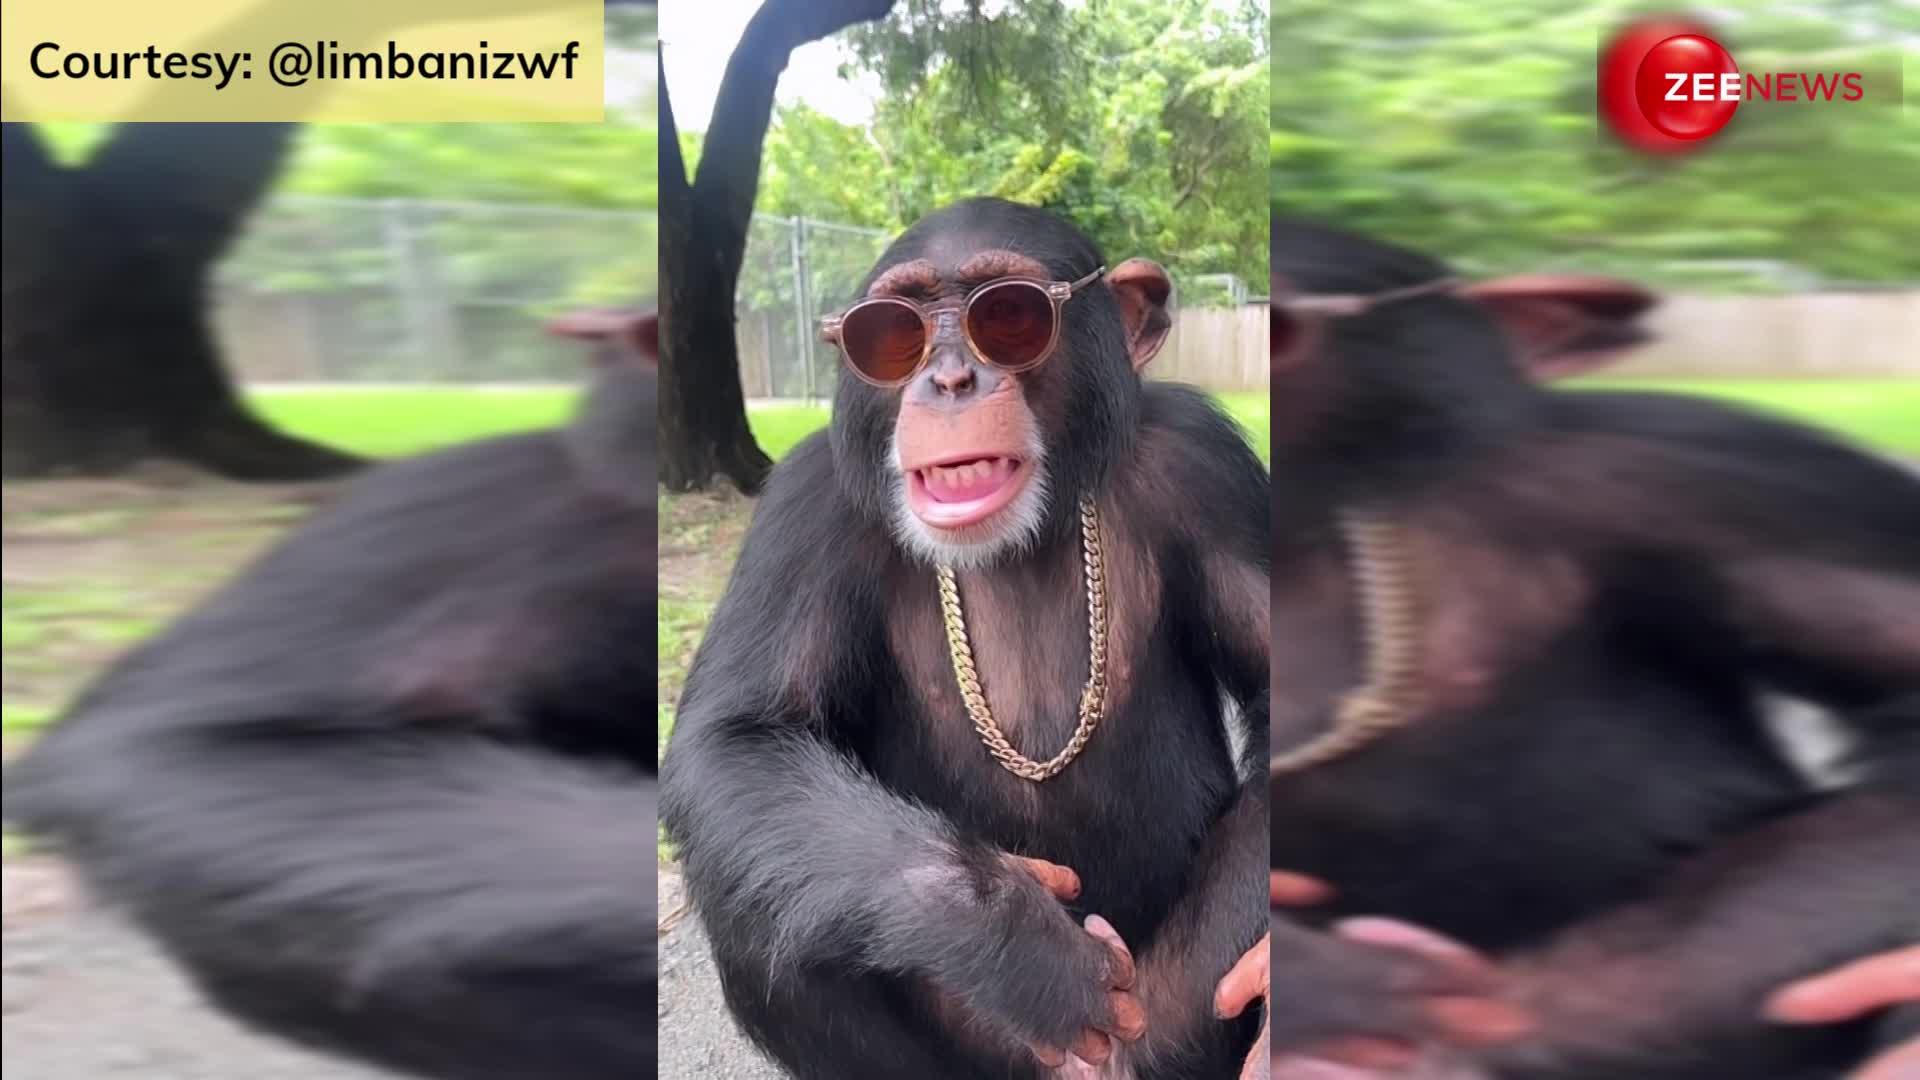 आंखों पर चश्मे का पहरा, गले में सोने की चैन... Chimpanzee का धाकड़ लुक सोशल मीडिया पर मचा रहा धमाल, देखें वीडियो